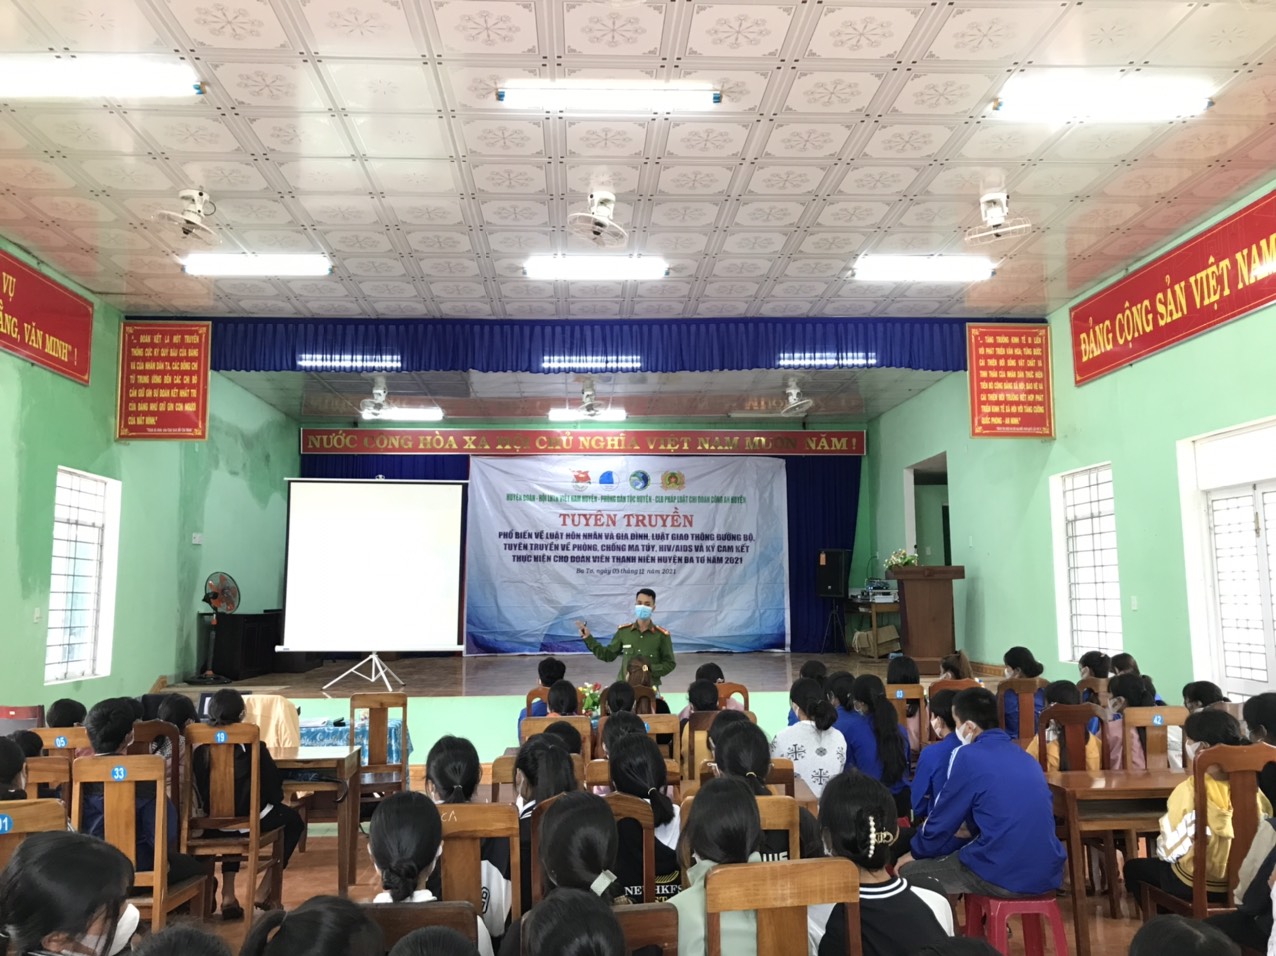 Đoàn Huyện Ba Tơ tổ chức hoạt động tuyên truyền pháp luật cho đoàn viên, thanh niên tại xã Ba Tô